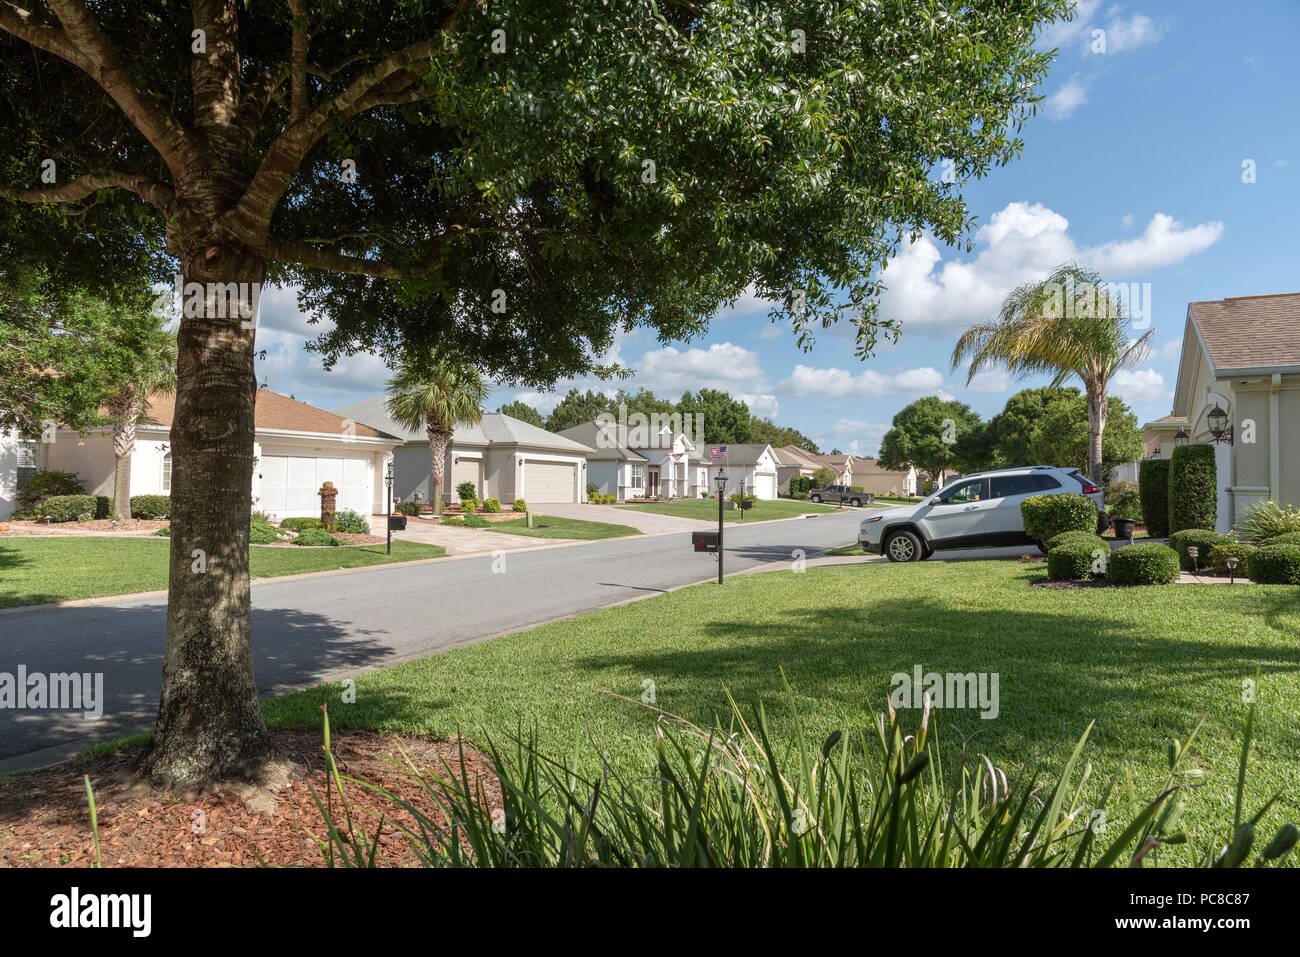 Wohnungsbau in Florida, USA für Rentner. Summerfield, Florida, USA Stockfoto